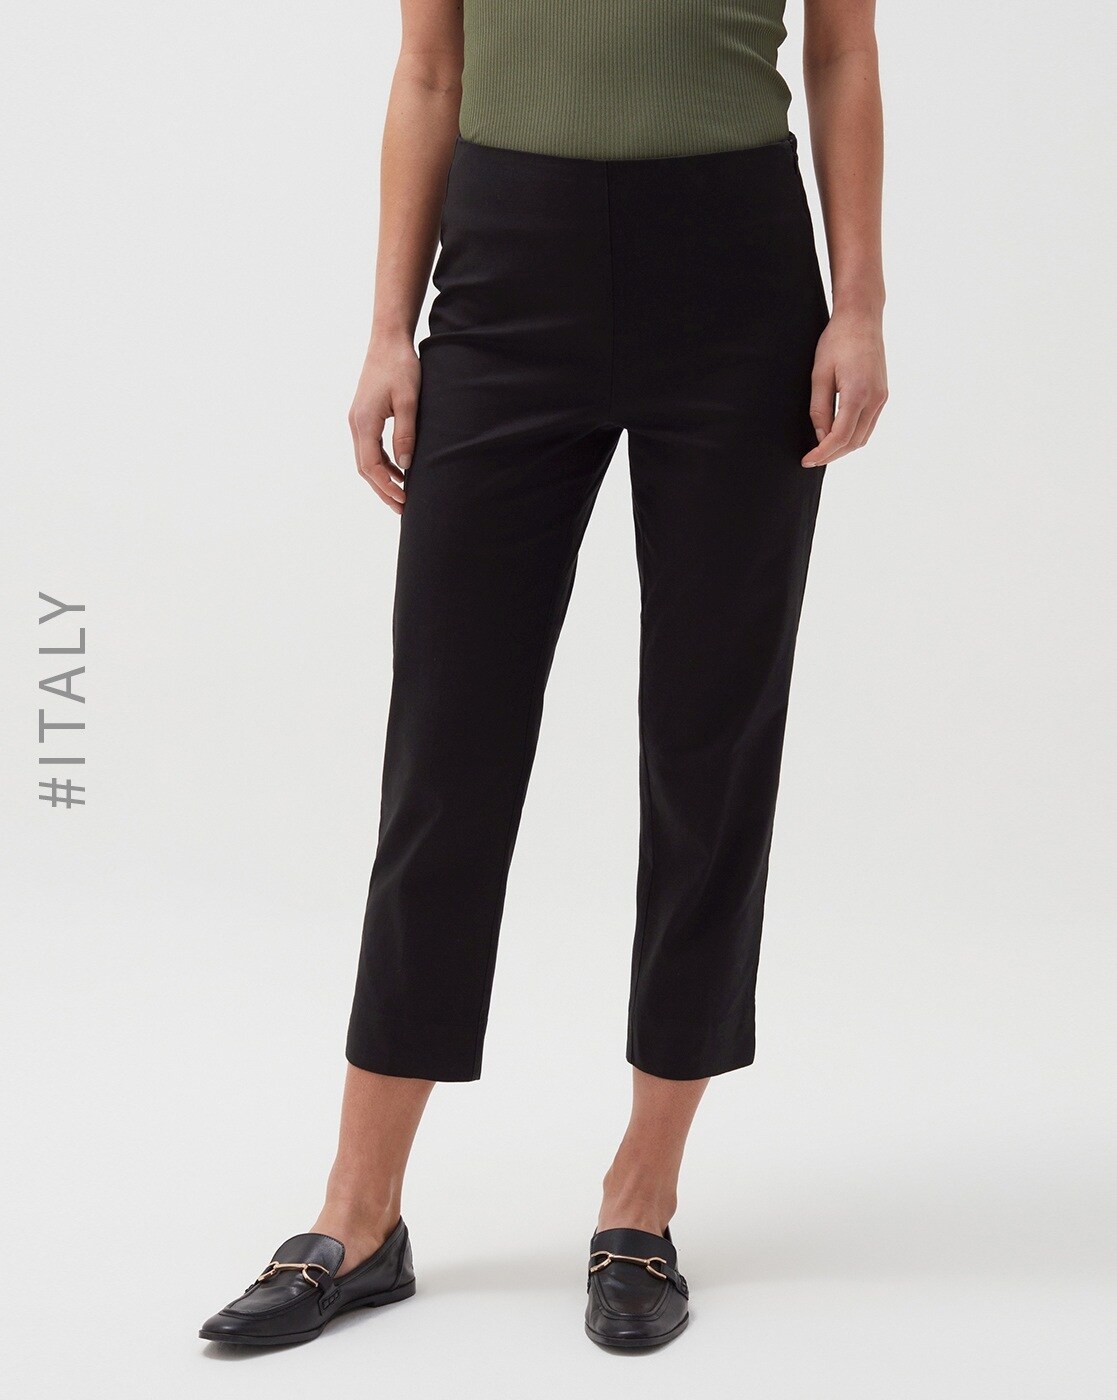 Buy Black Trousers  Pants for Women by GAS Online  Ajiocom